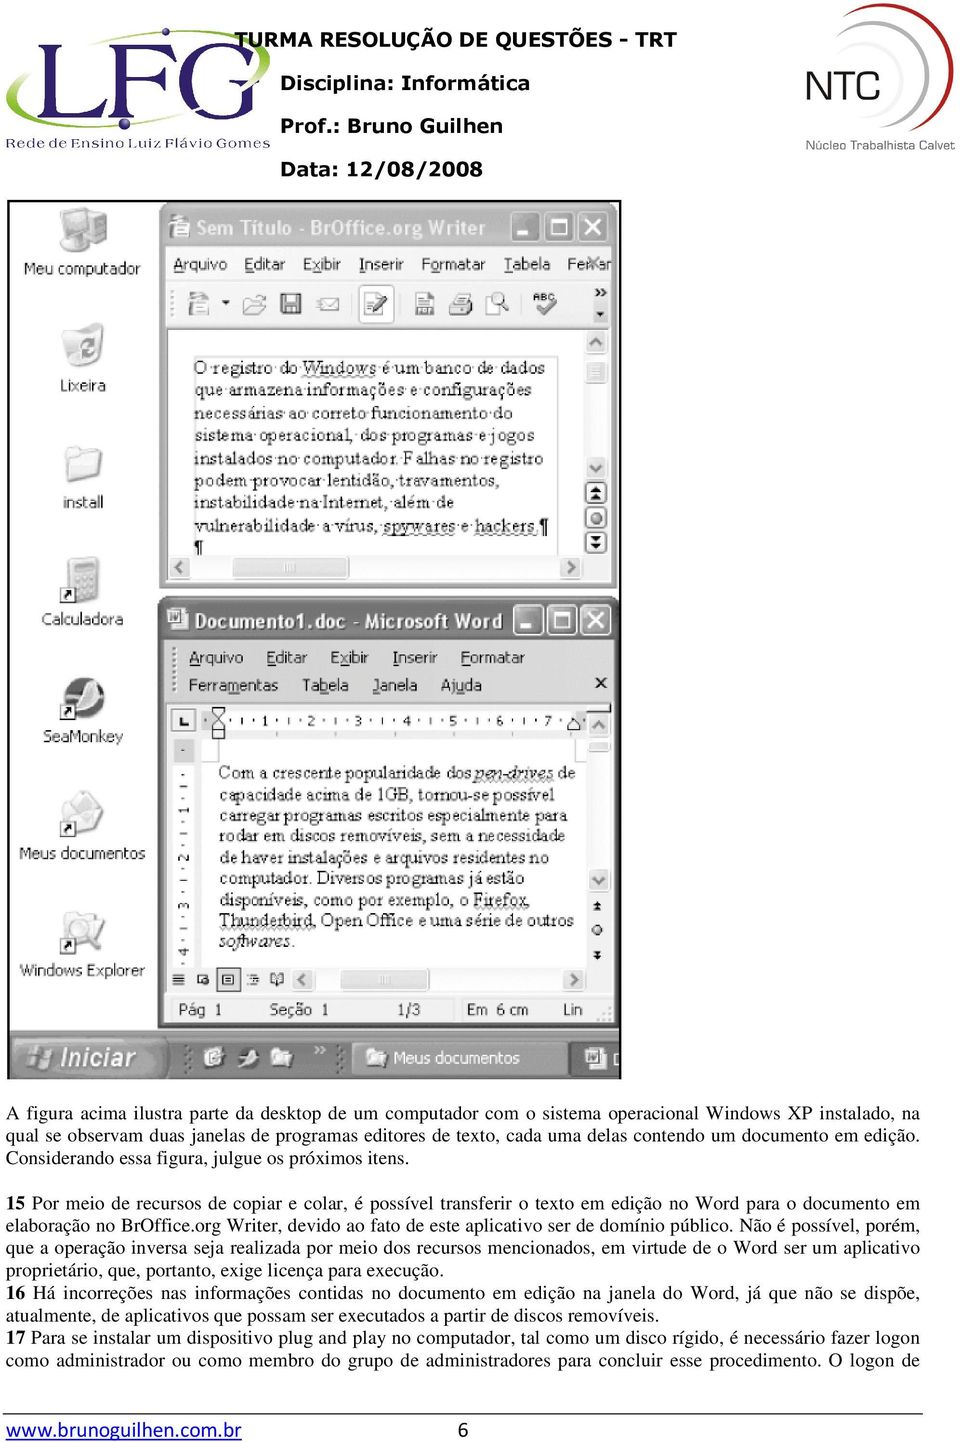 15 Por meio de recursos de copiar e colar, é possível transferir o texto em edição no Word para o documento em elaboração no BrOffice.